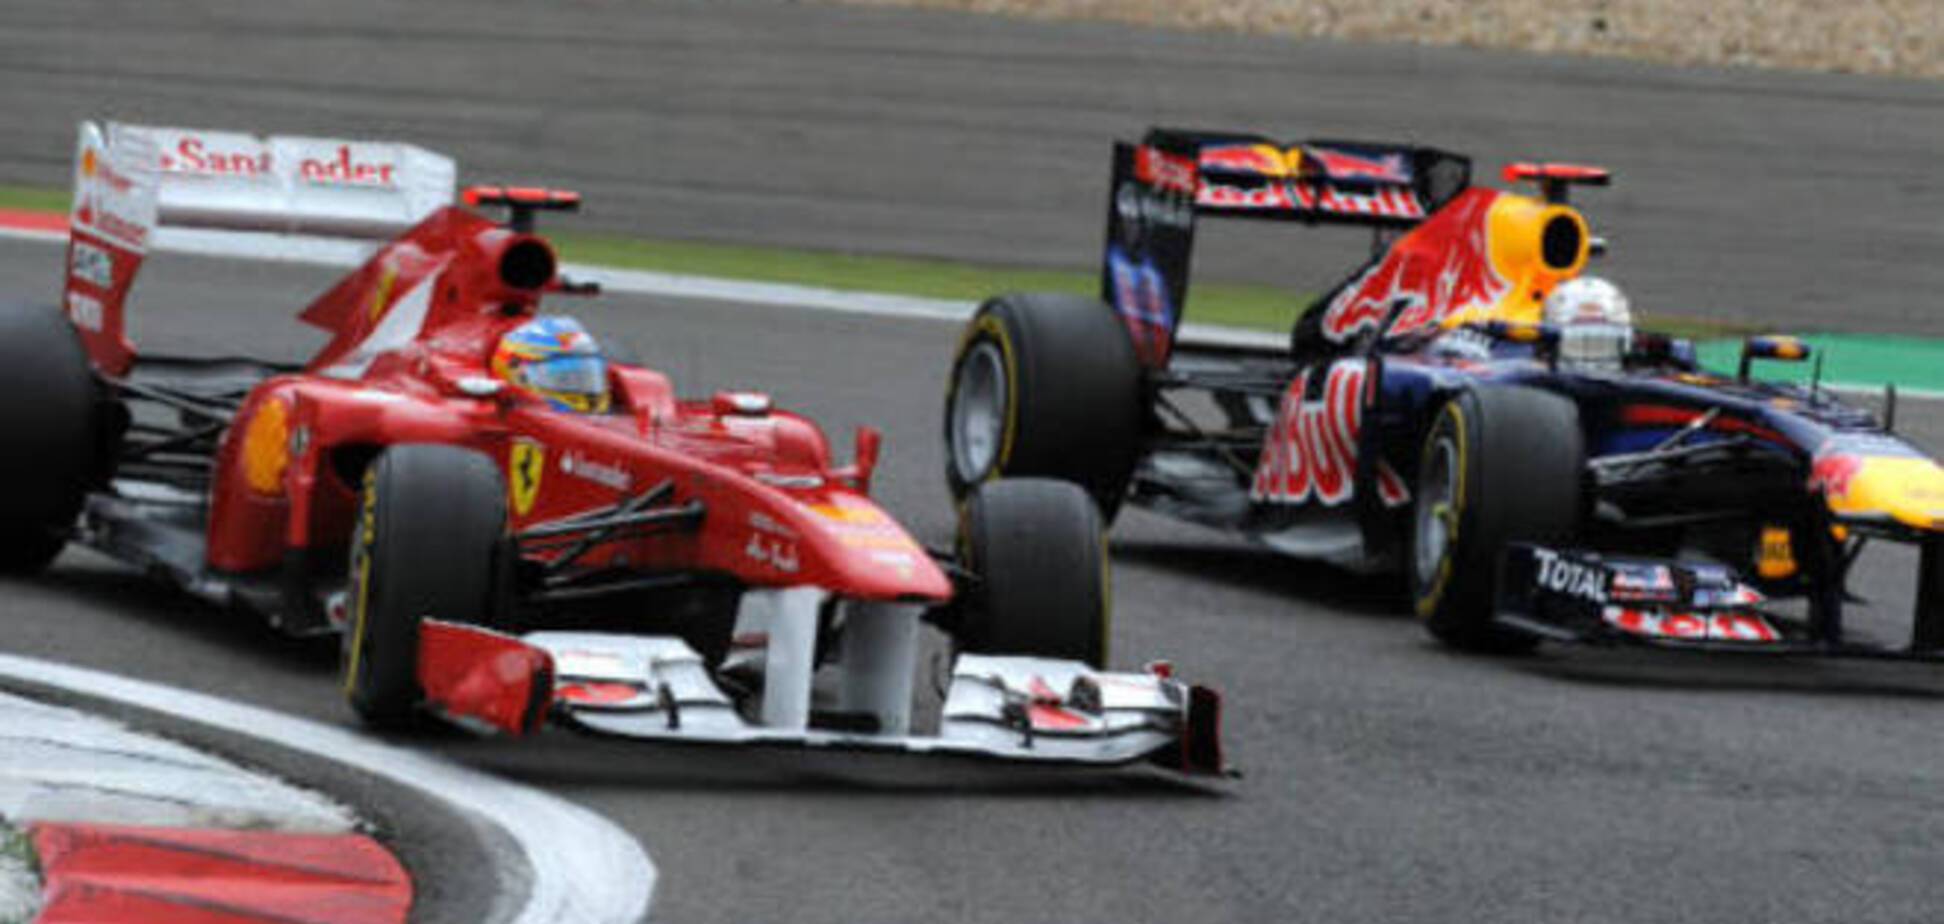 Топ-команды Формулы-1 выставят по 3 болида в новом сезоне